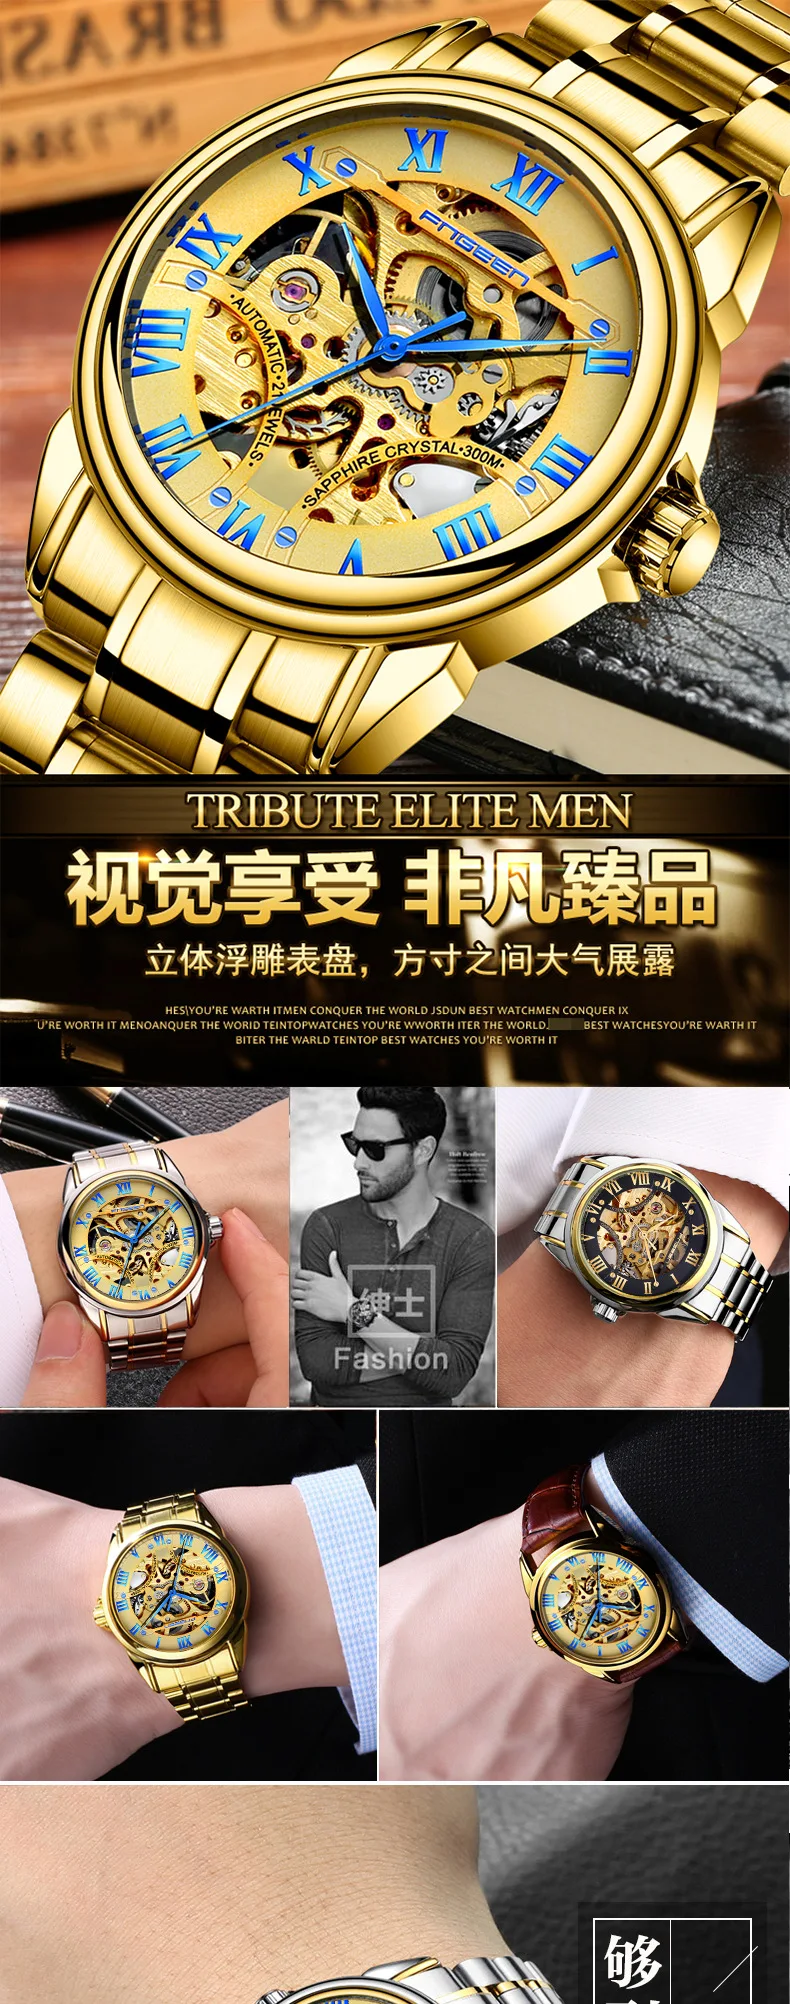 Fegeen Tourbillon часы для мужчин s автоматические часы для мужчин люксовый бренд известный Нержавеющая Сталь Механические часы Relogio Masculino